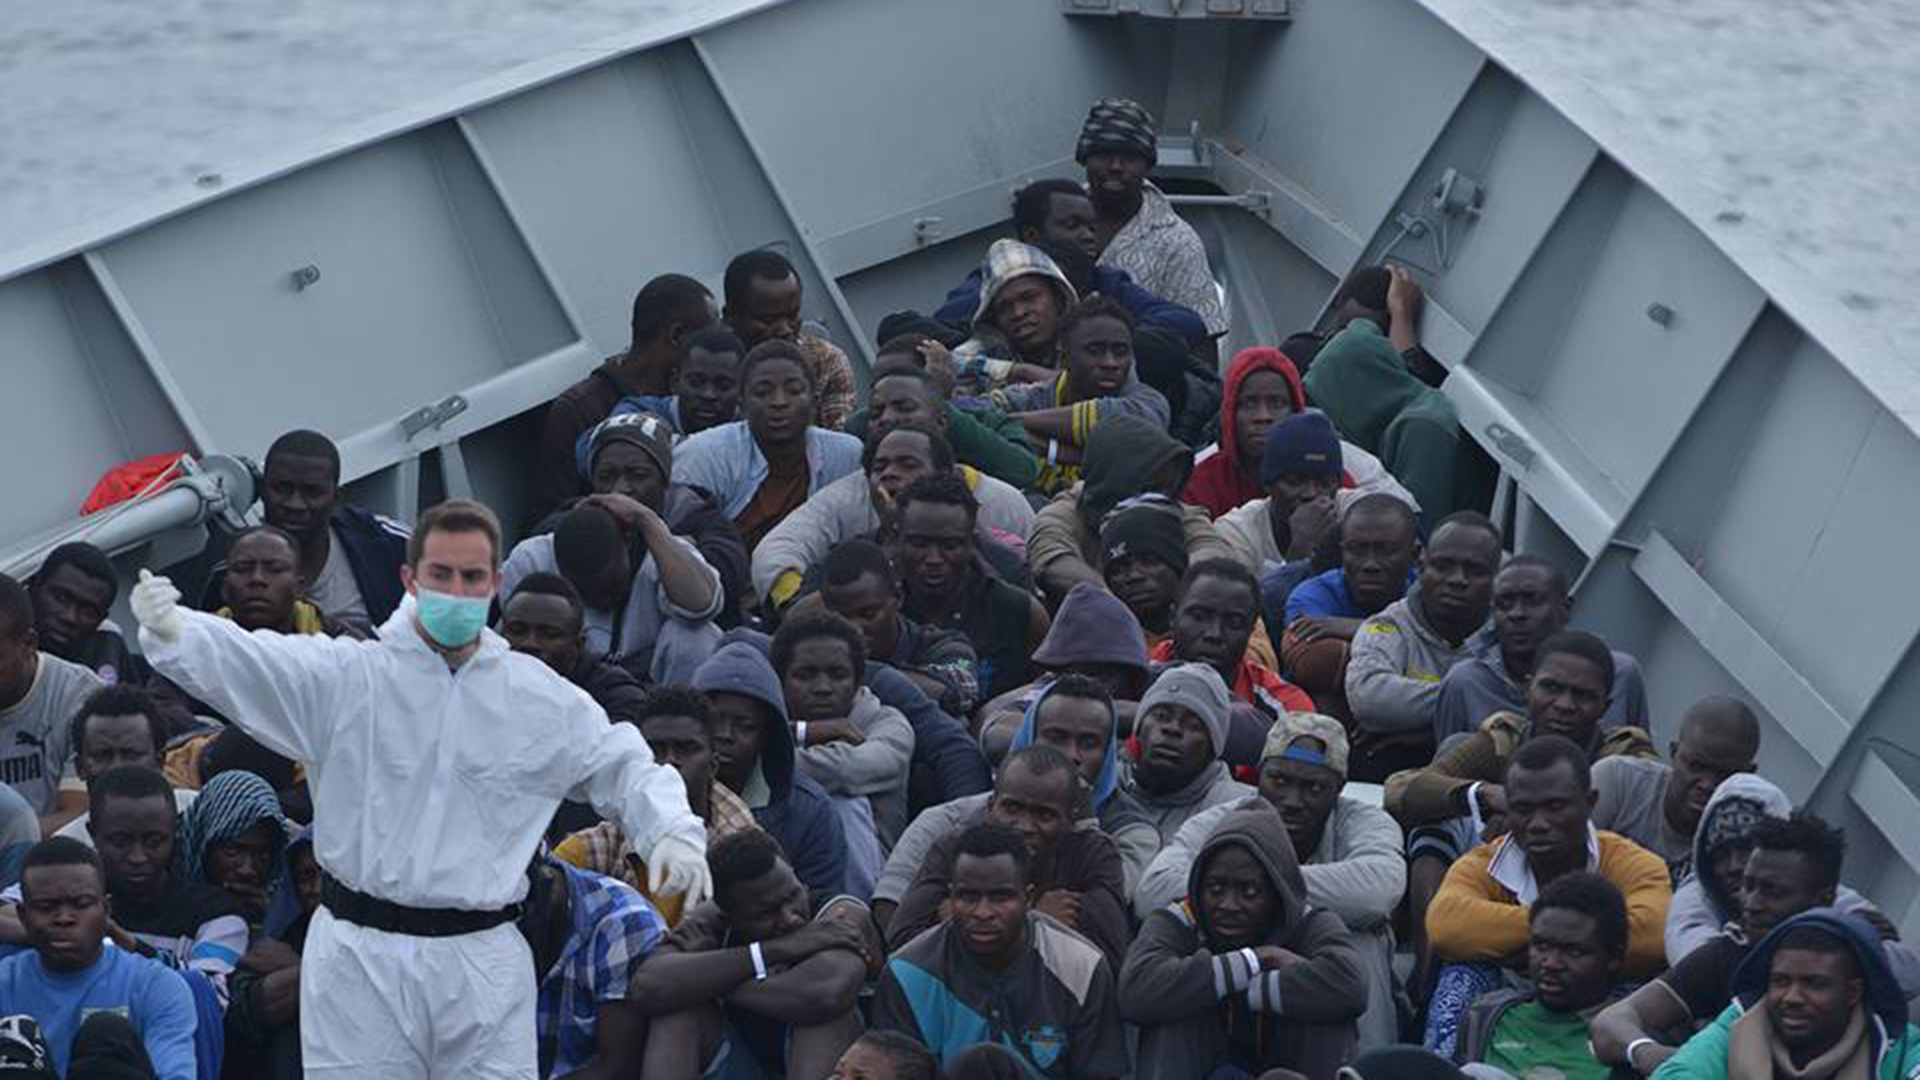 La fragata 'Canarias' llega a Messina con 636 inmigrantes y un bebé nacido a bordo